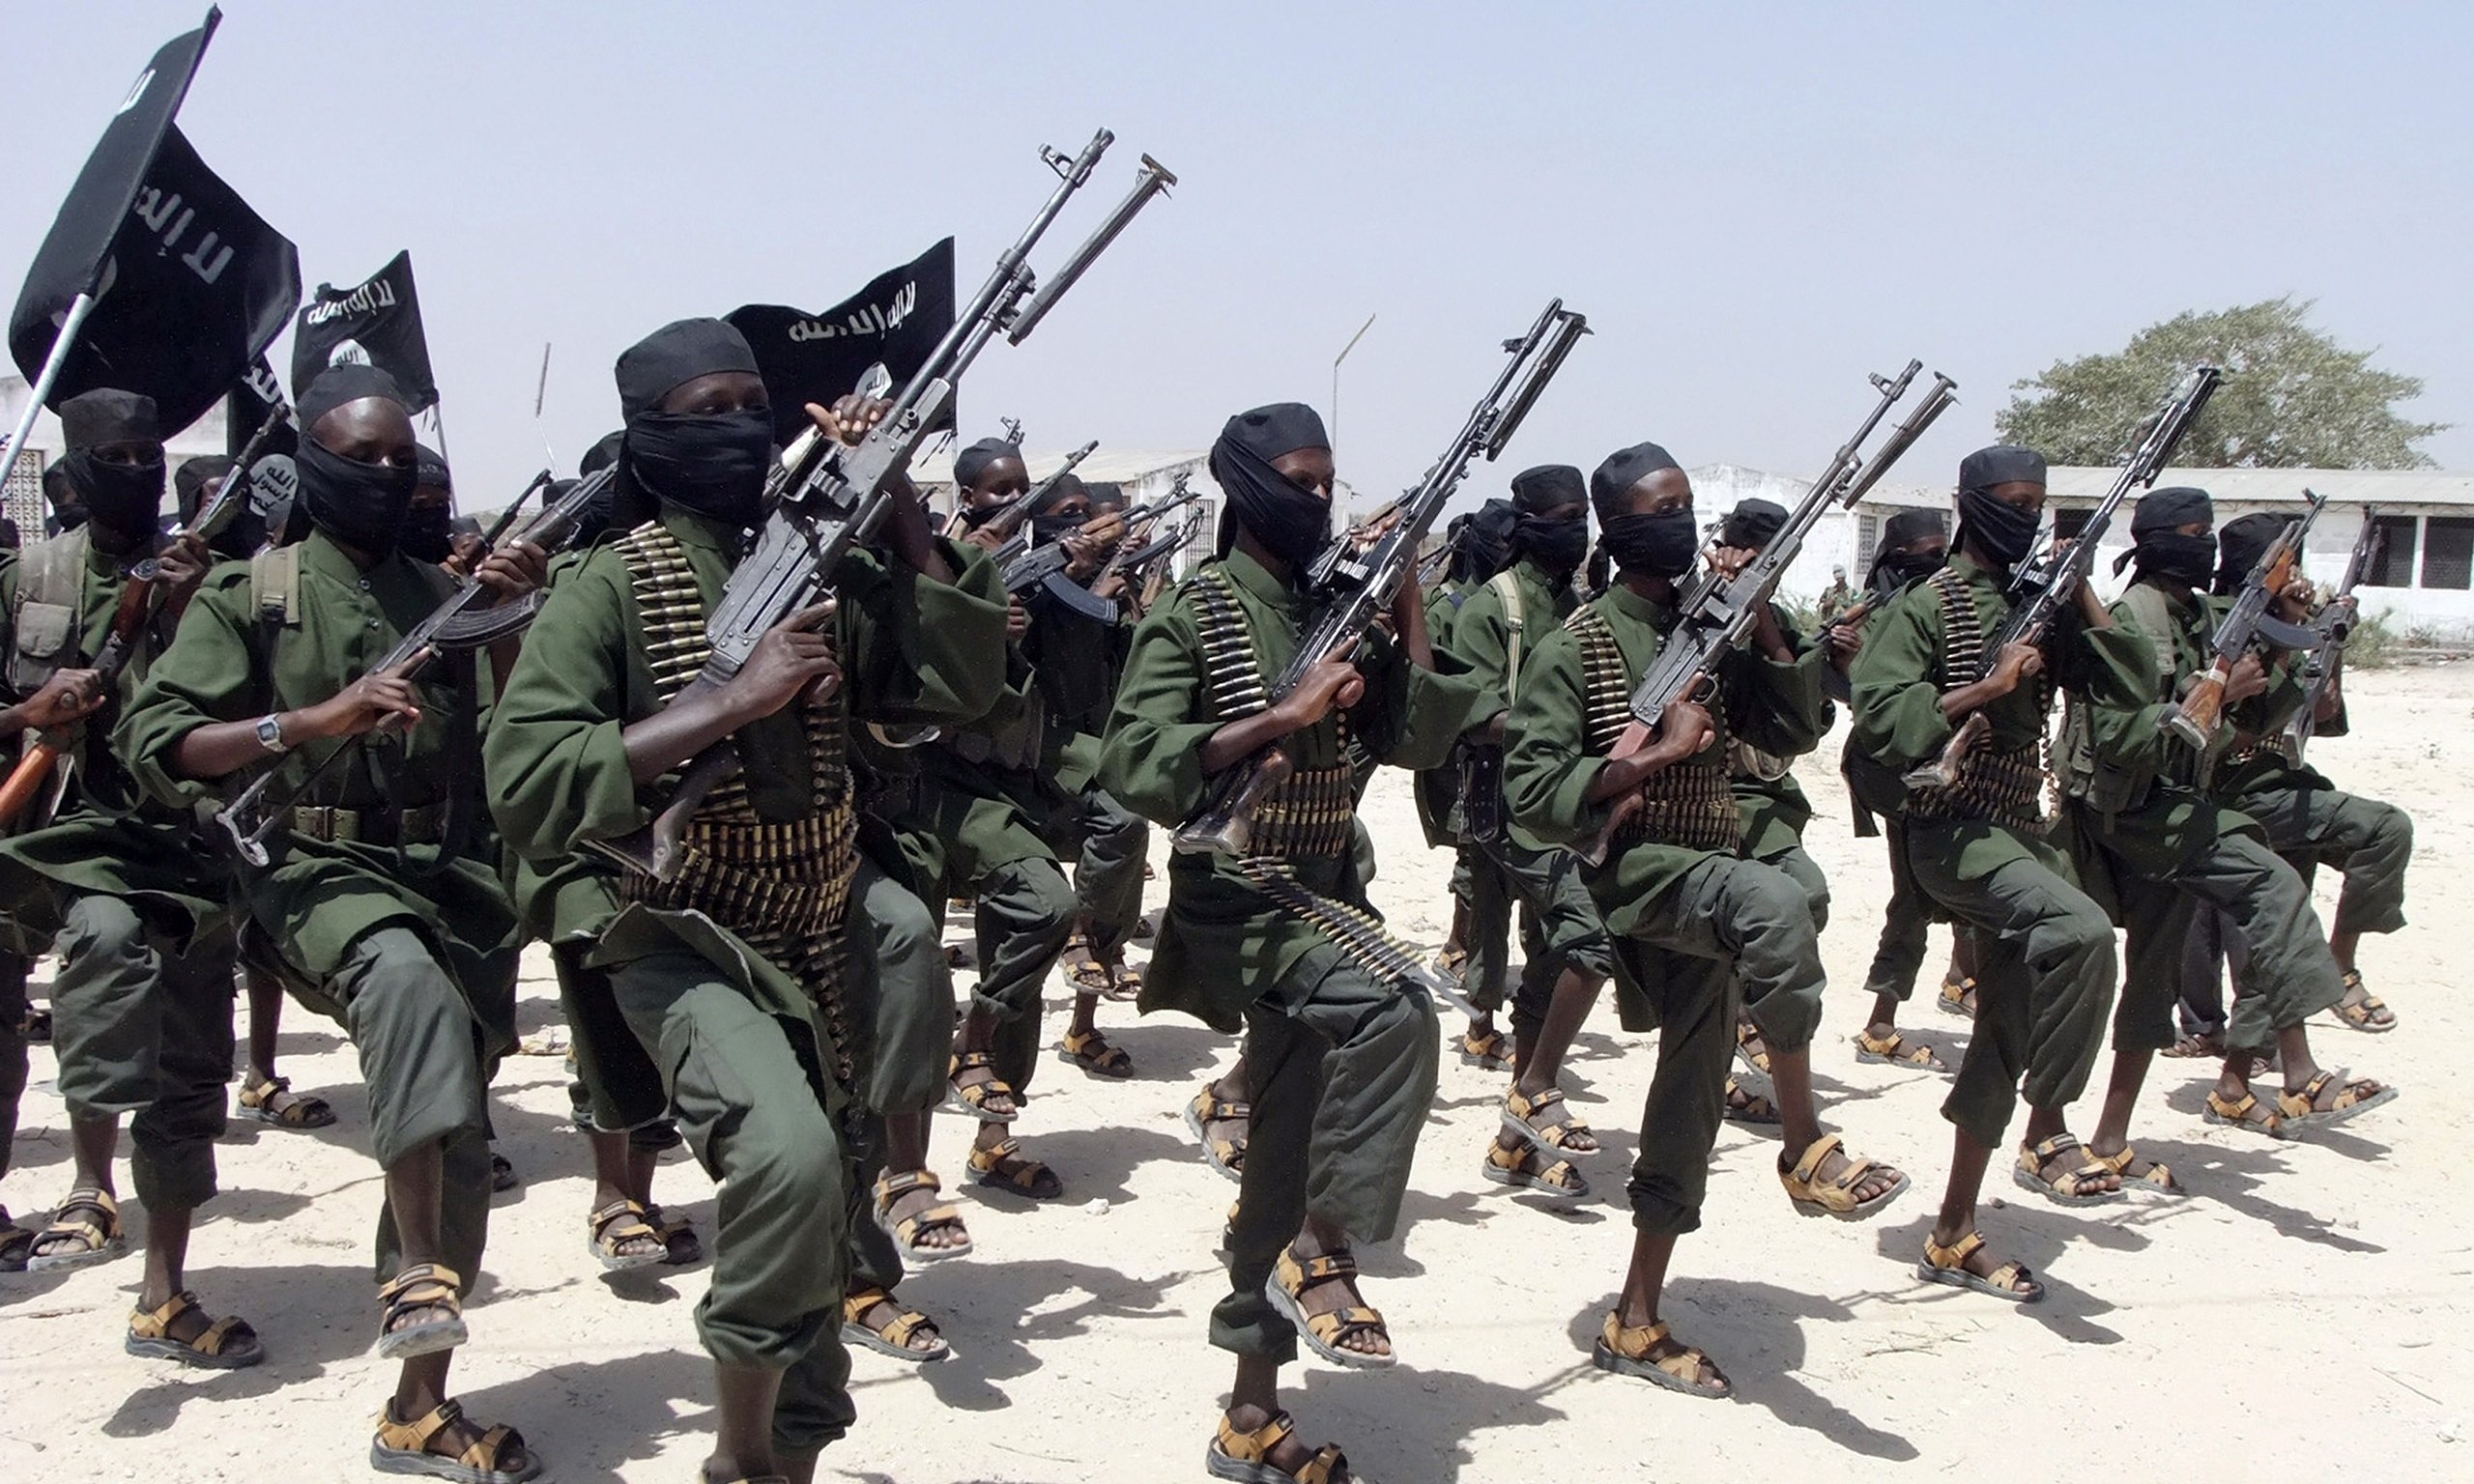 Somalia: Insurgency in Africa (VIDEO)